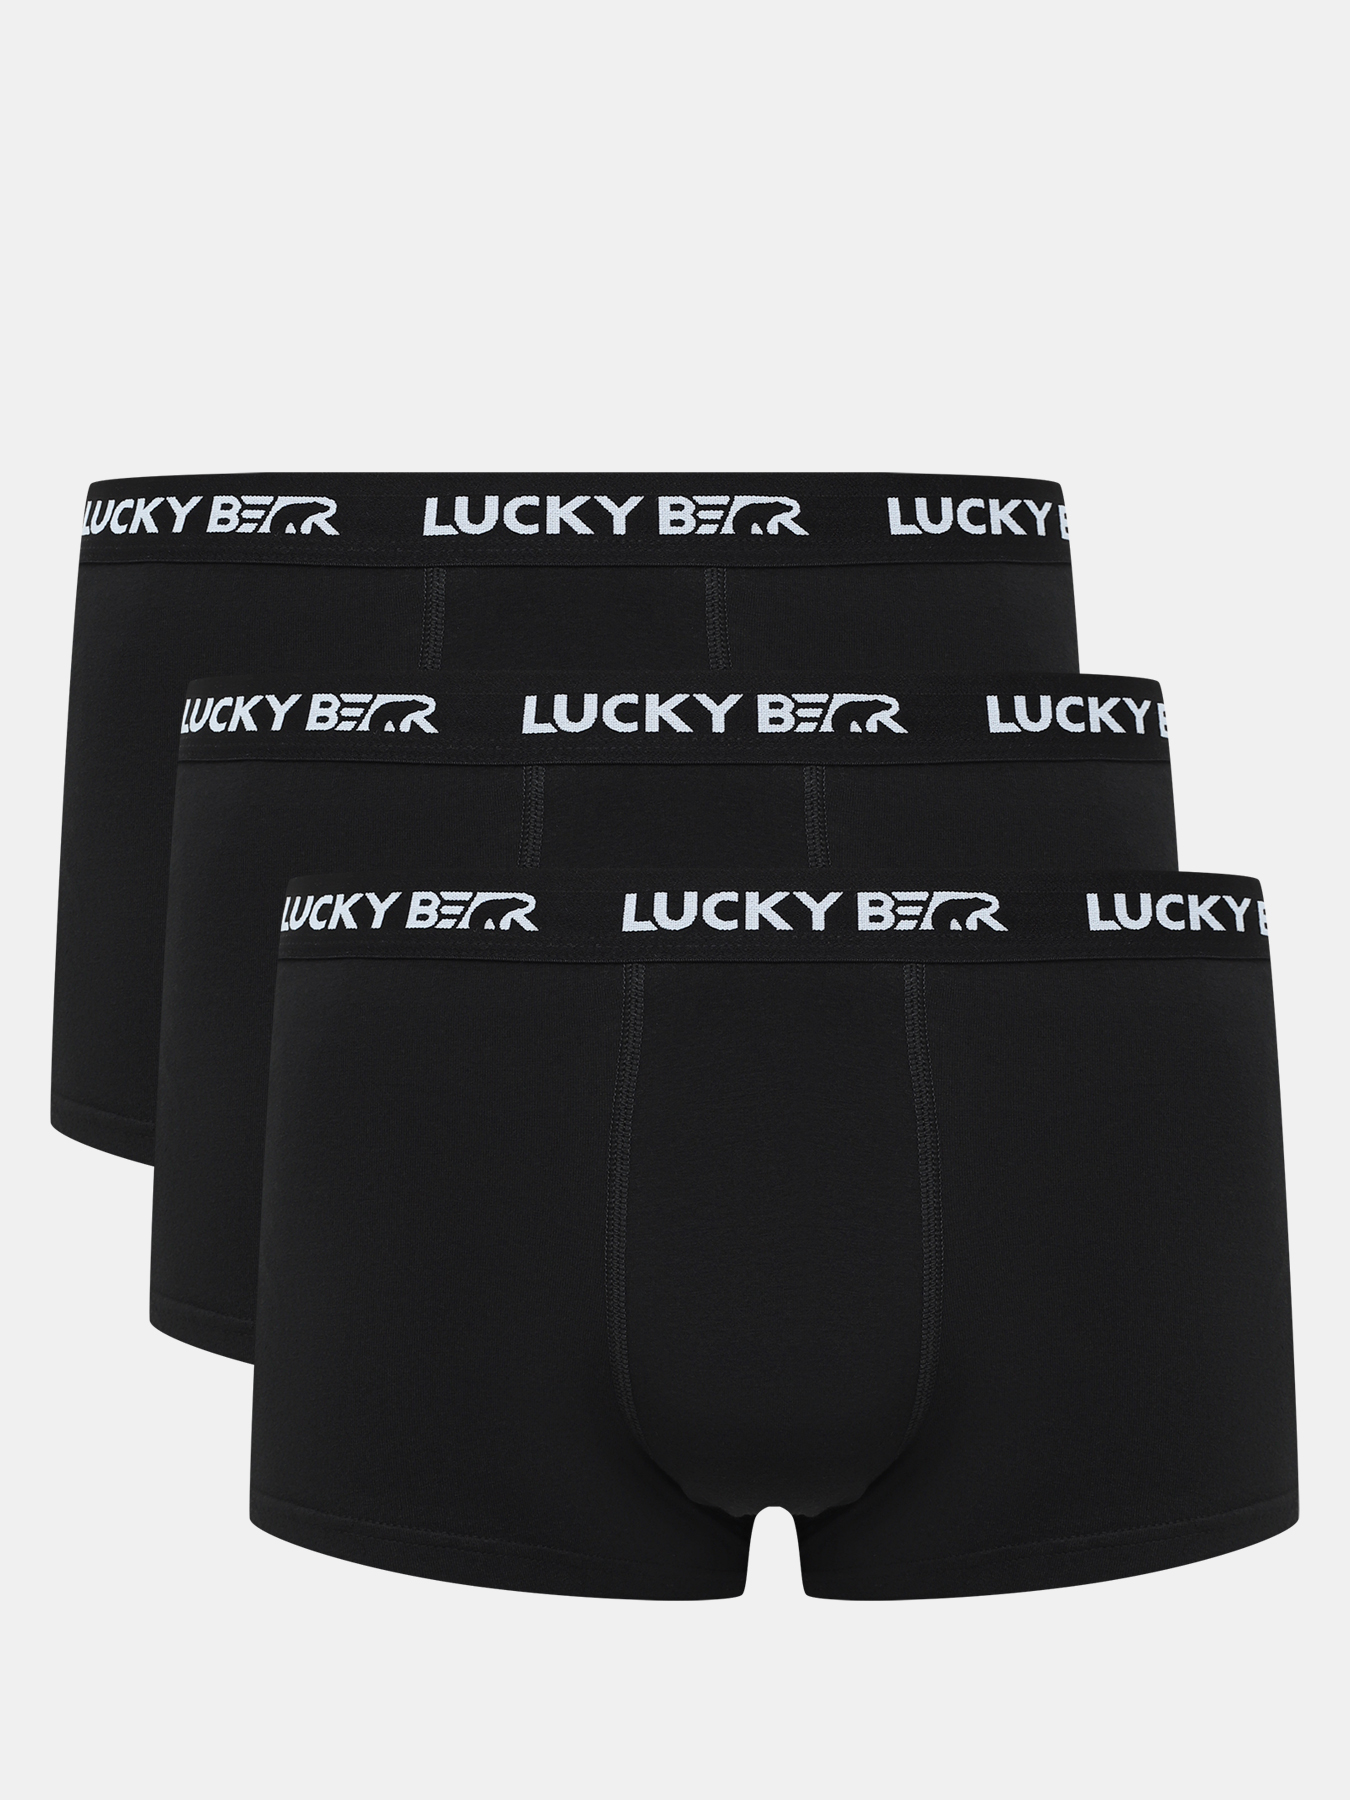 Комплект трусов мужских Lucky Bear 450596 черных M